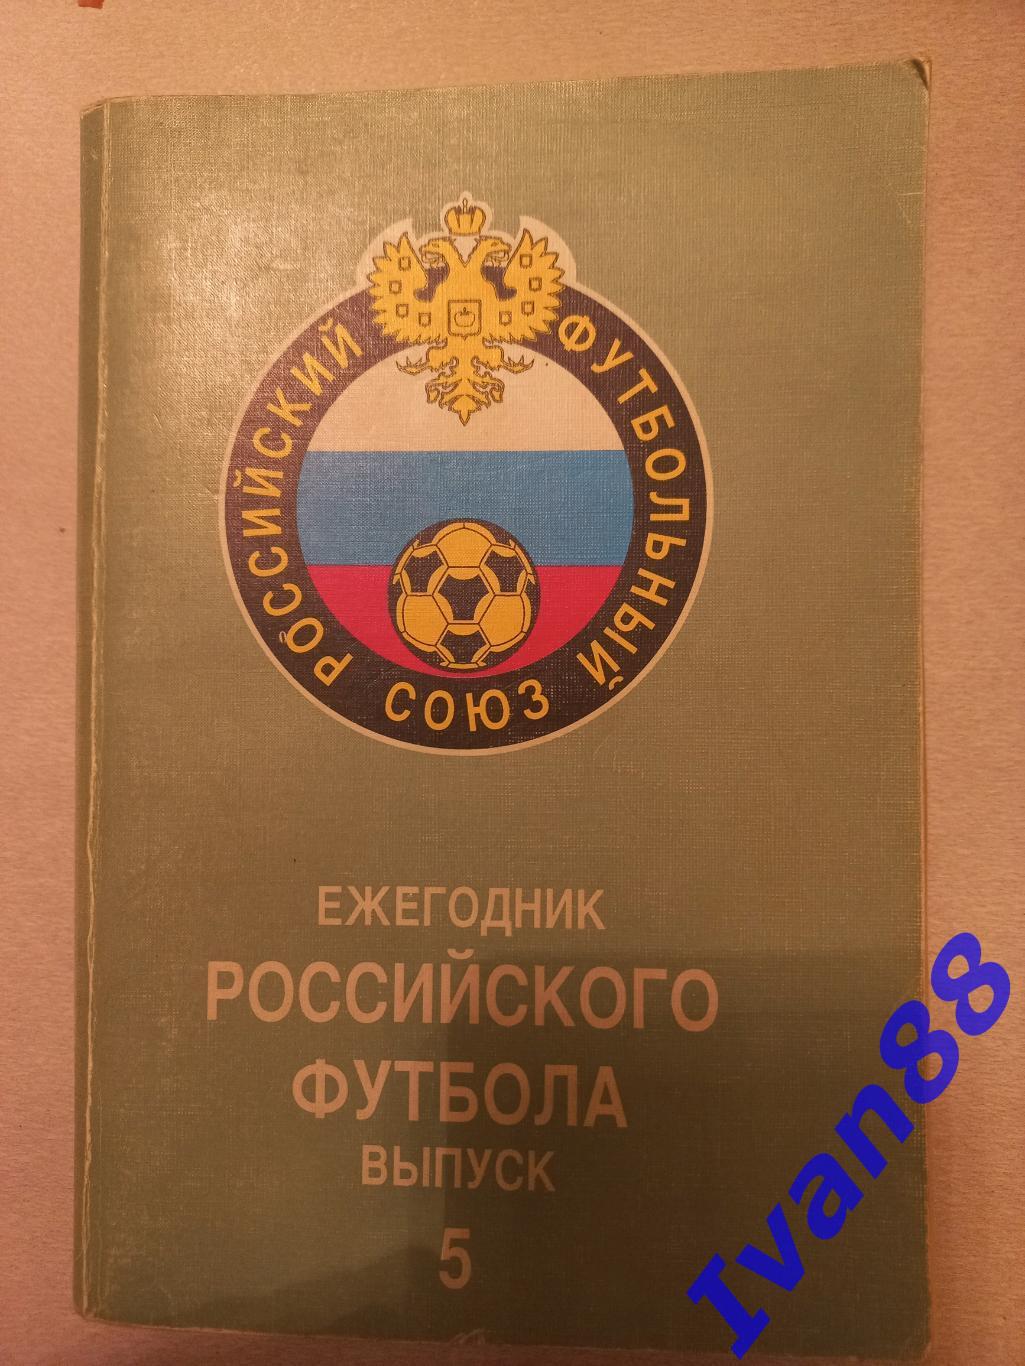 Ежегодник Российского футбола. Выпуск 5 1997